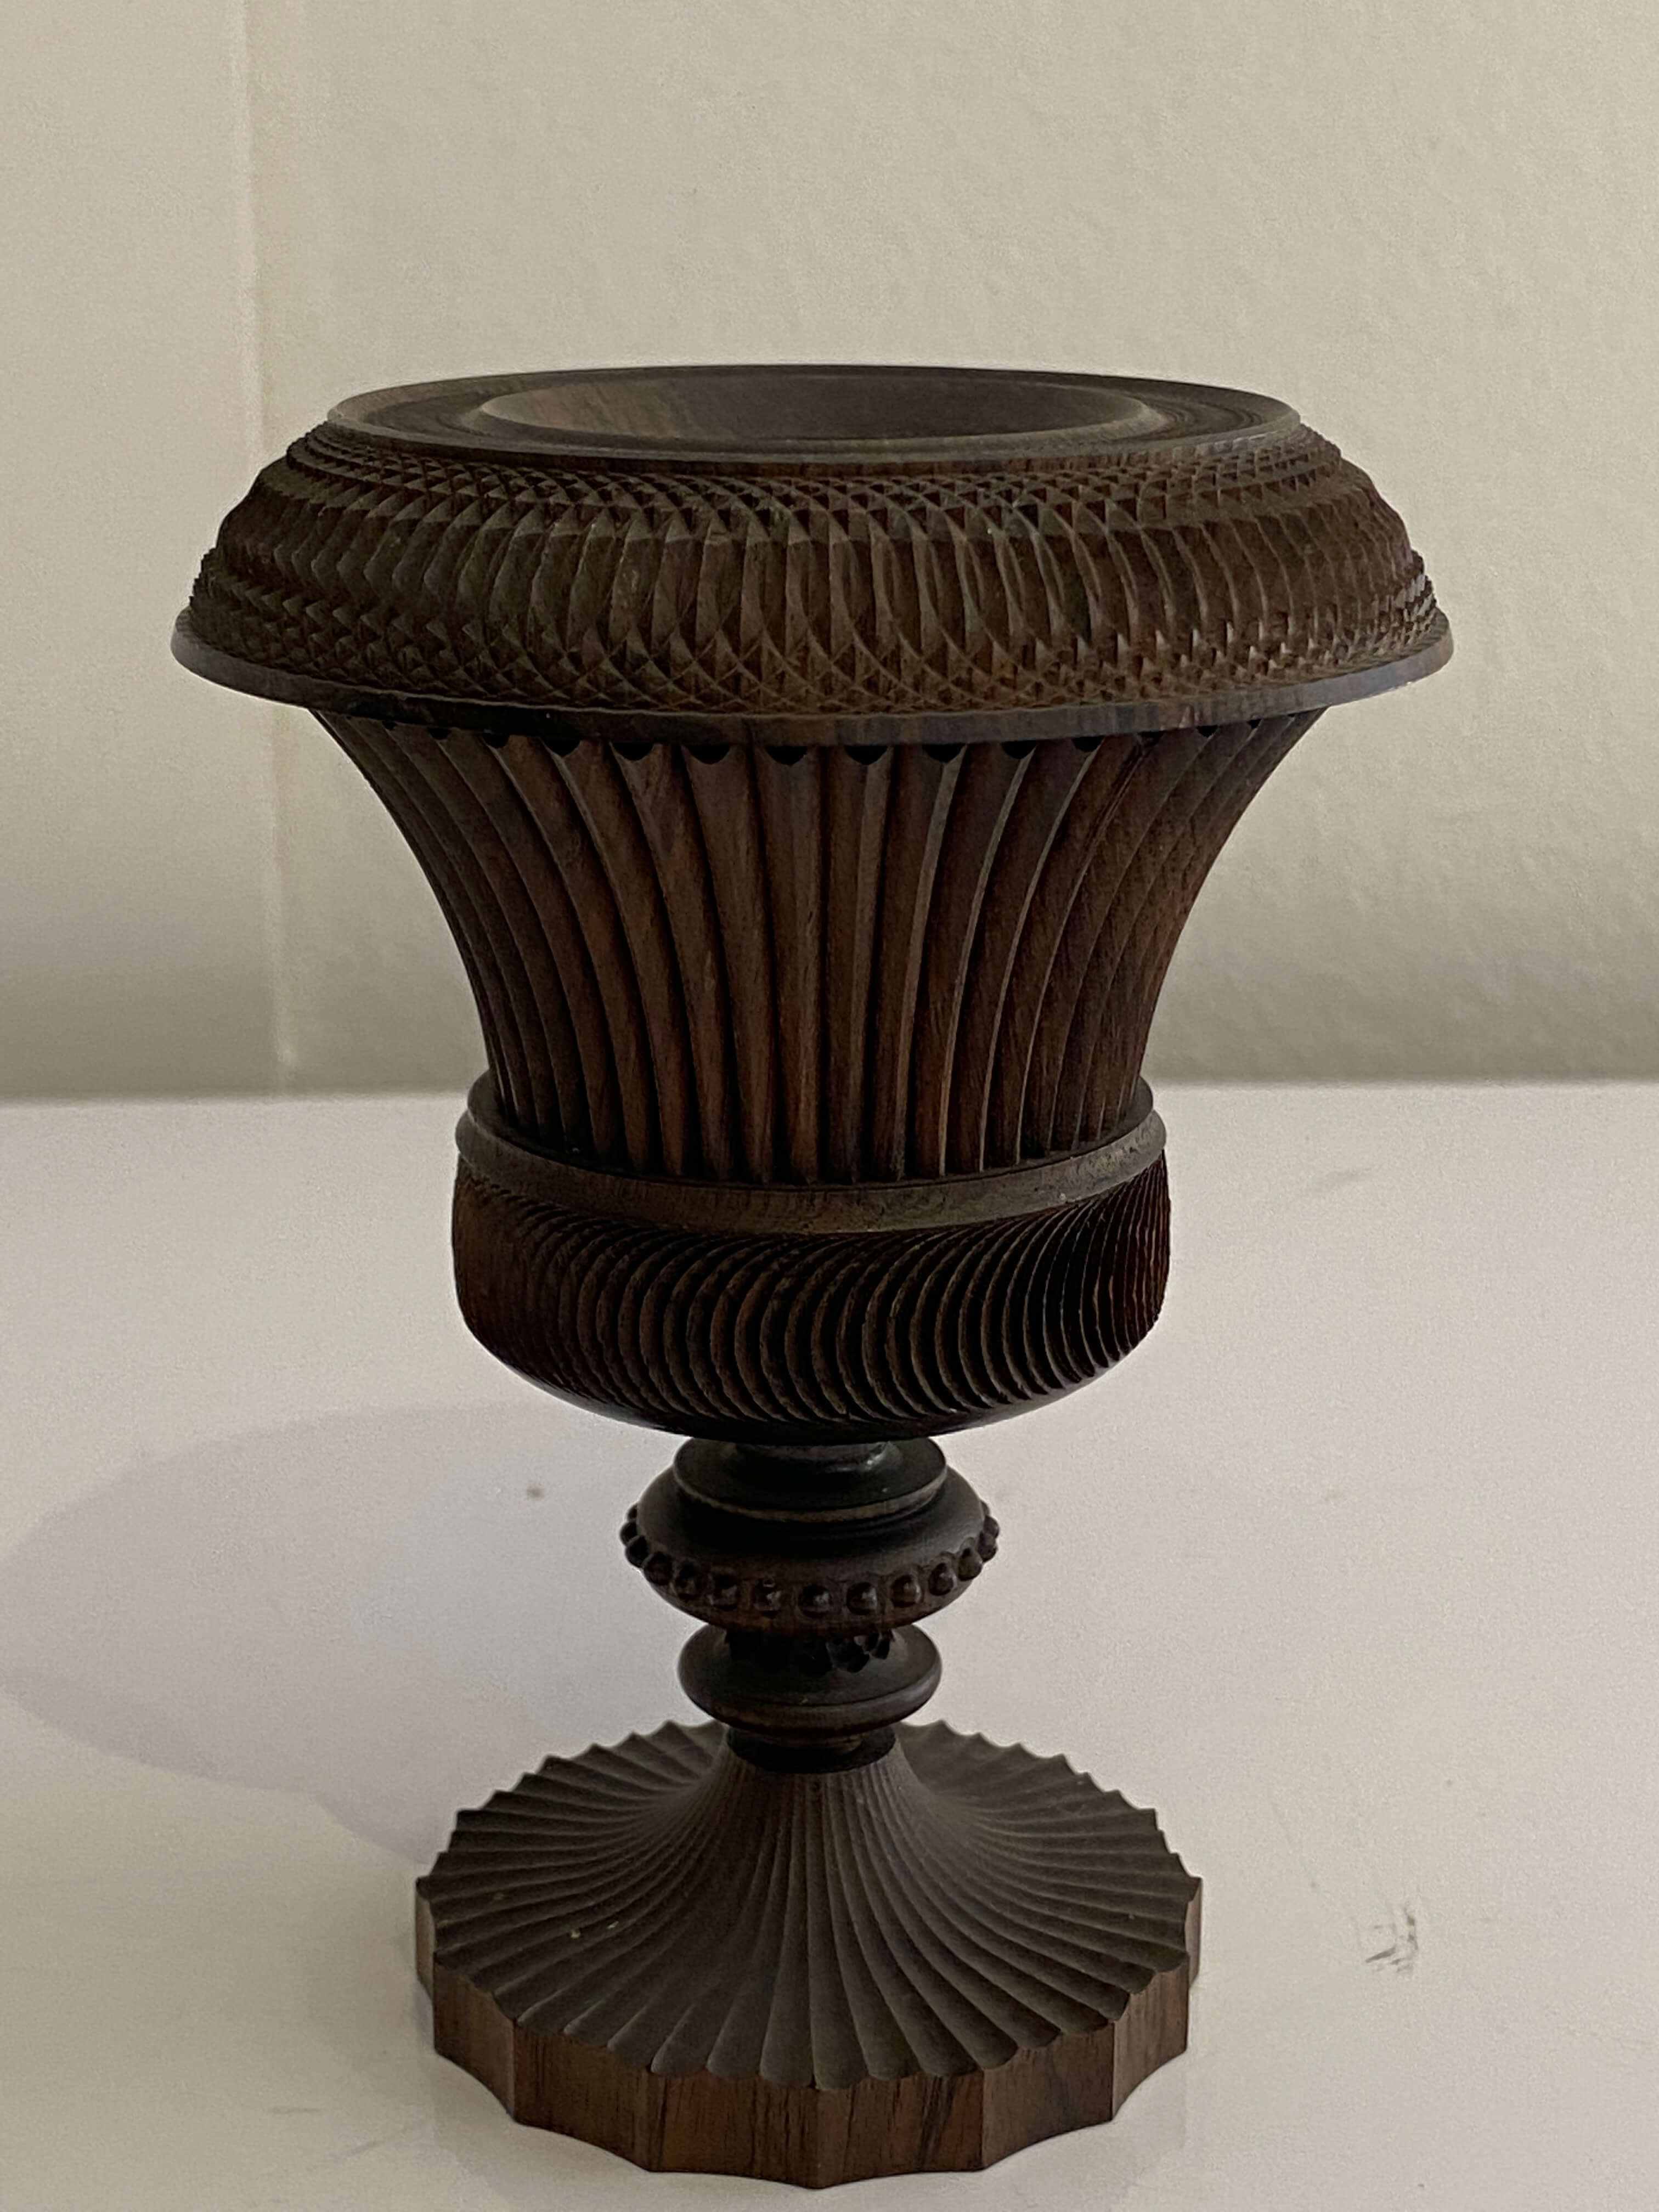 A treen lignum vitae spill vase, 19th century